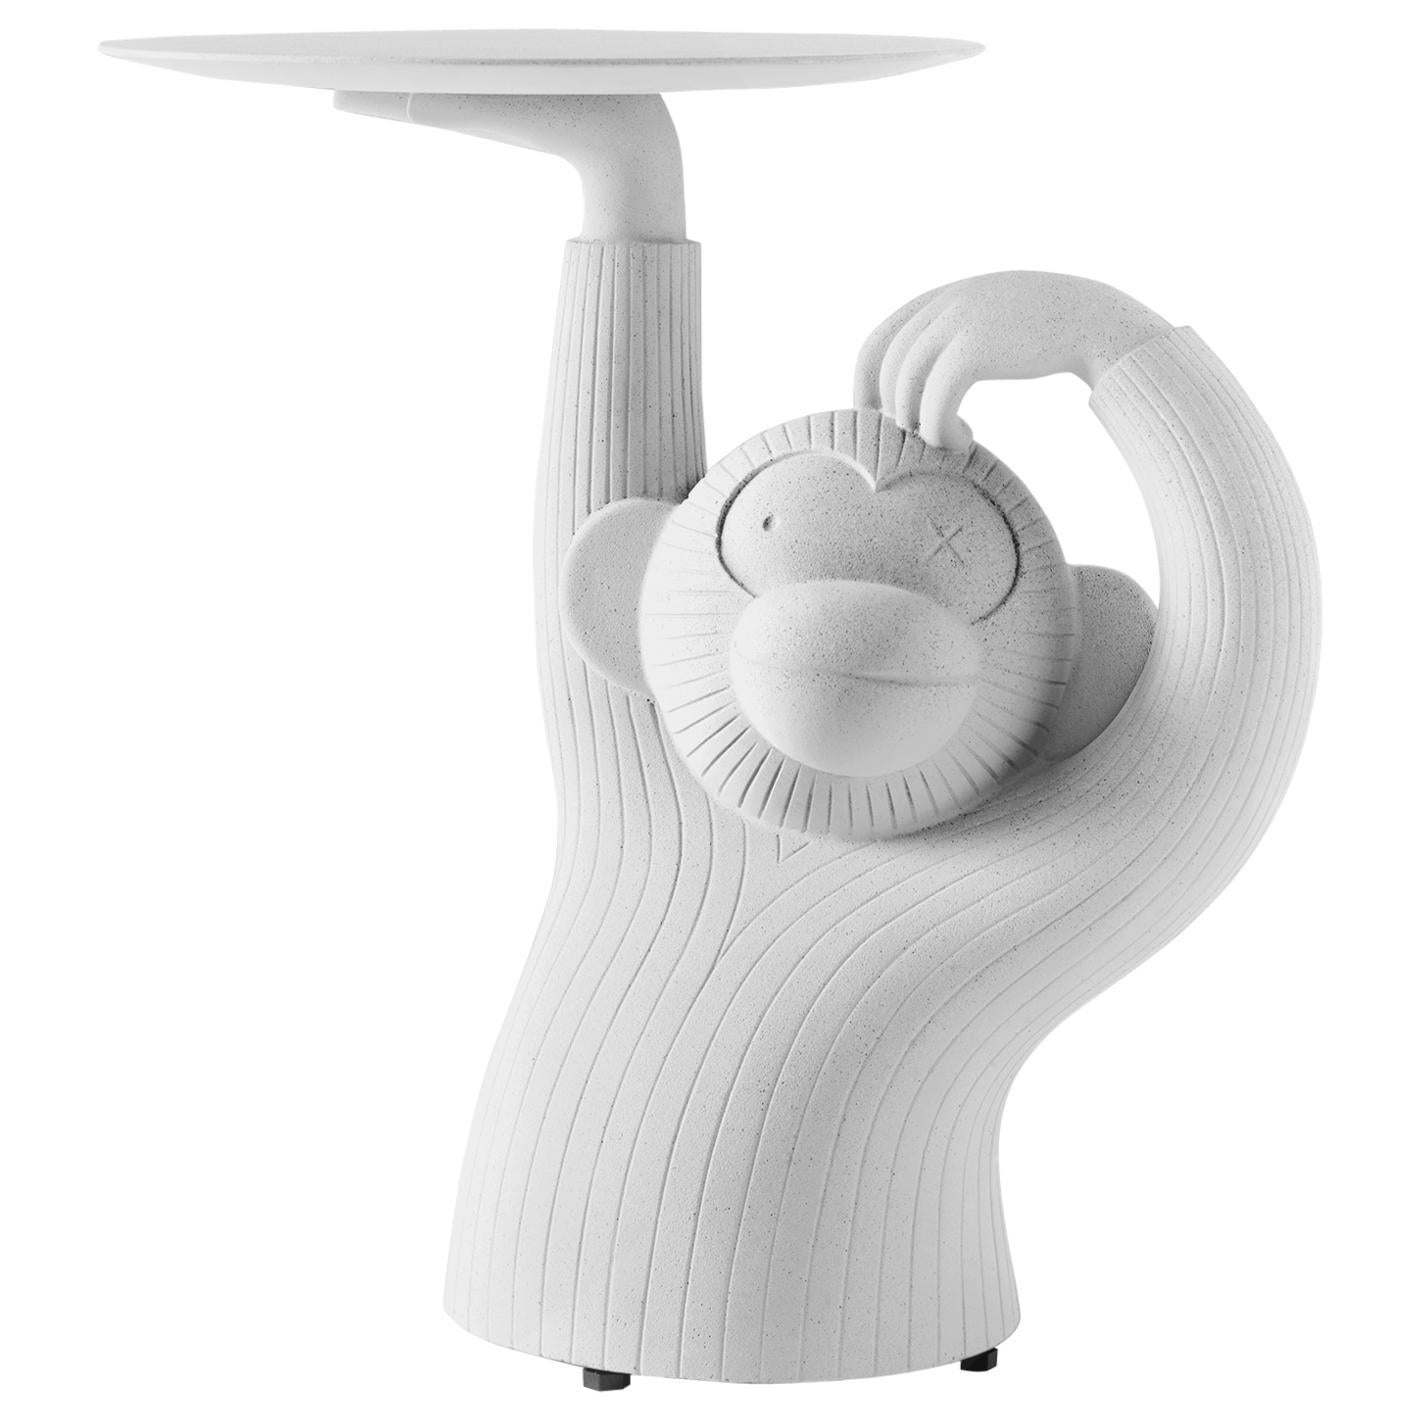 Table d'appoint modèle « singe » de Jaime Hayon, blanche, dessinée pour l'intérieur et l'extérieur, Espagne